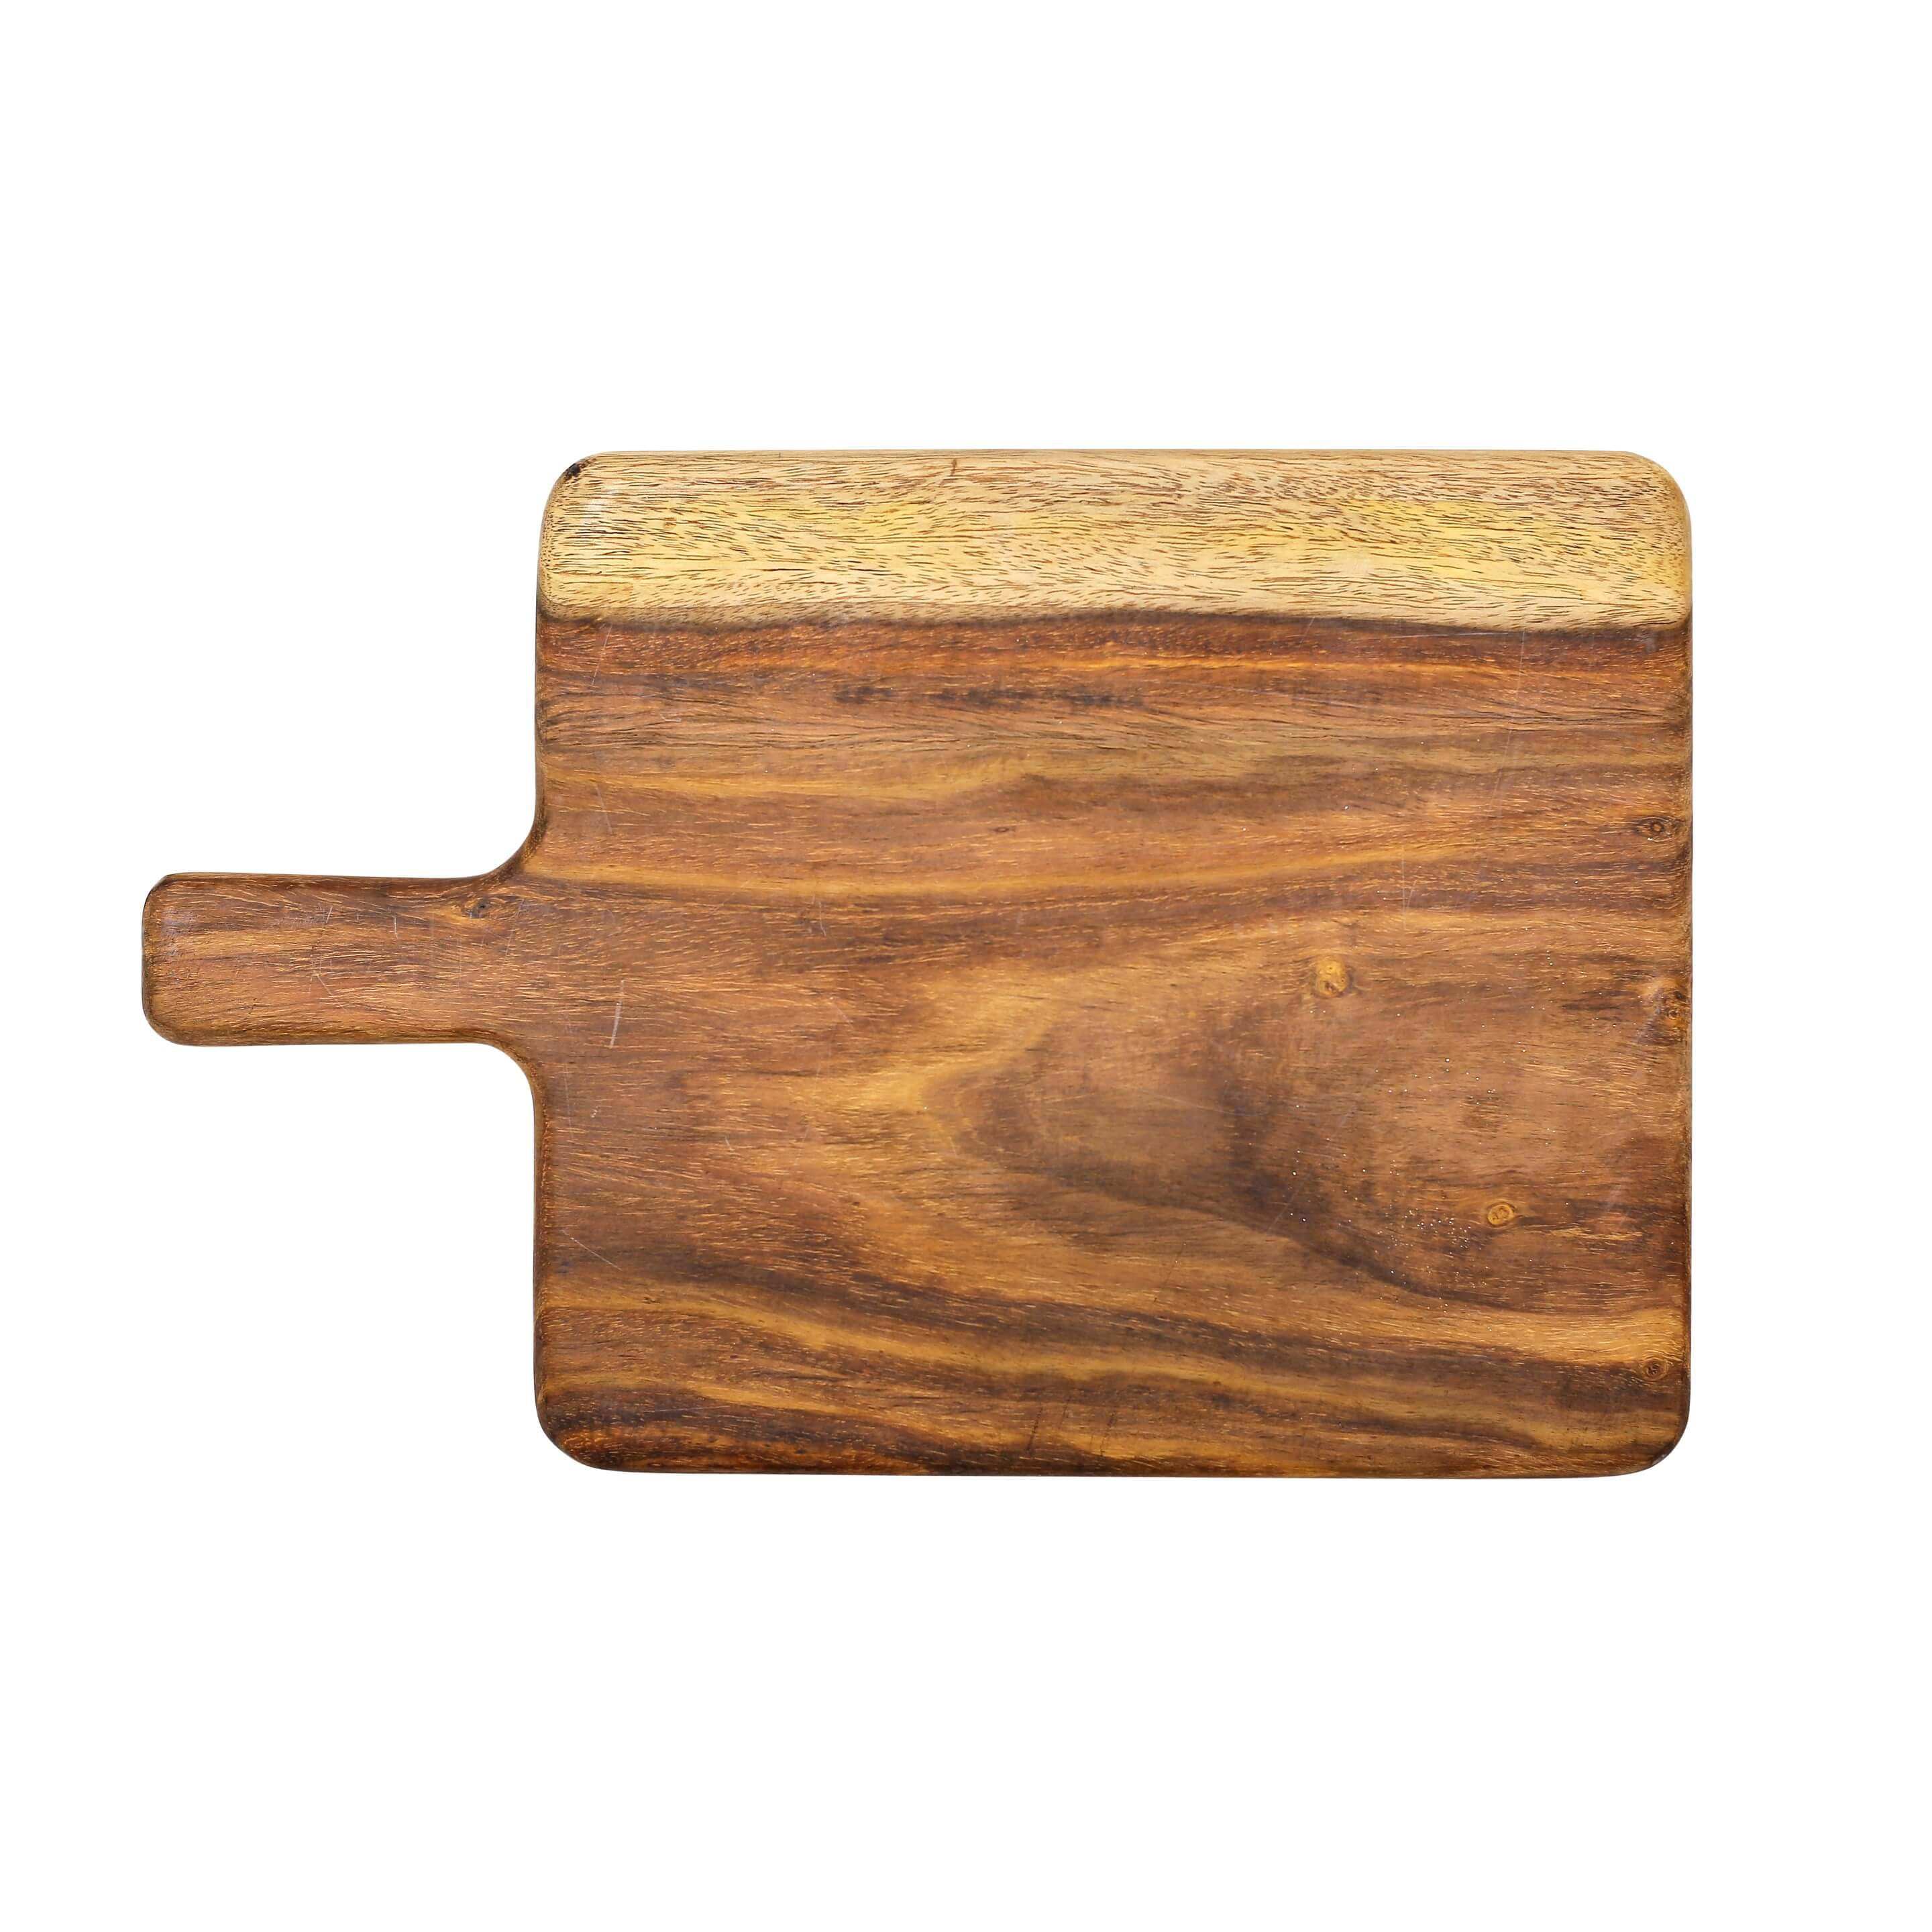 (Single wood) Rectangle Bat Chopping Board Cutting Board